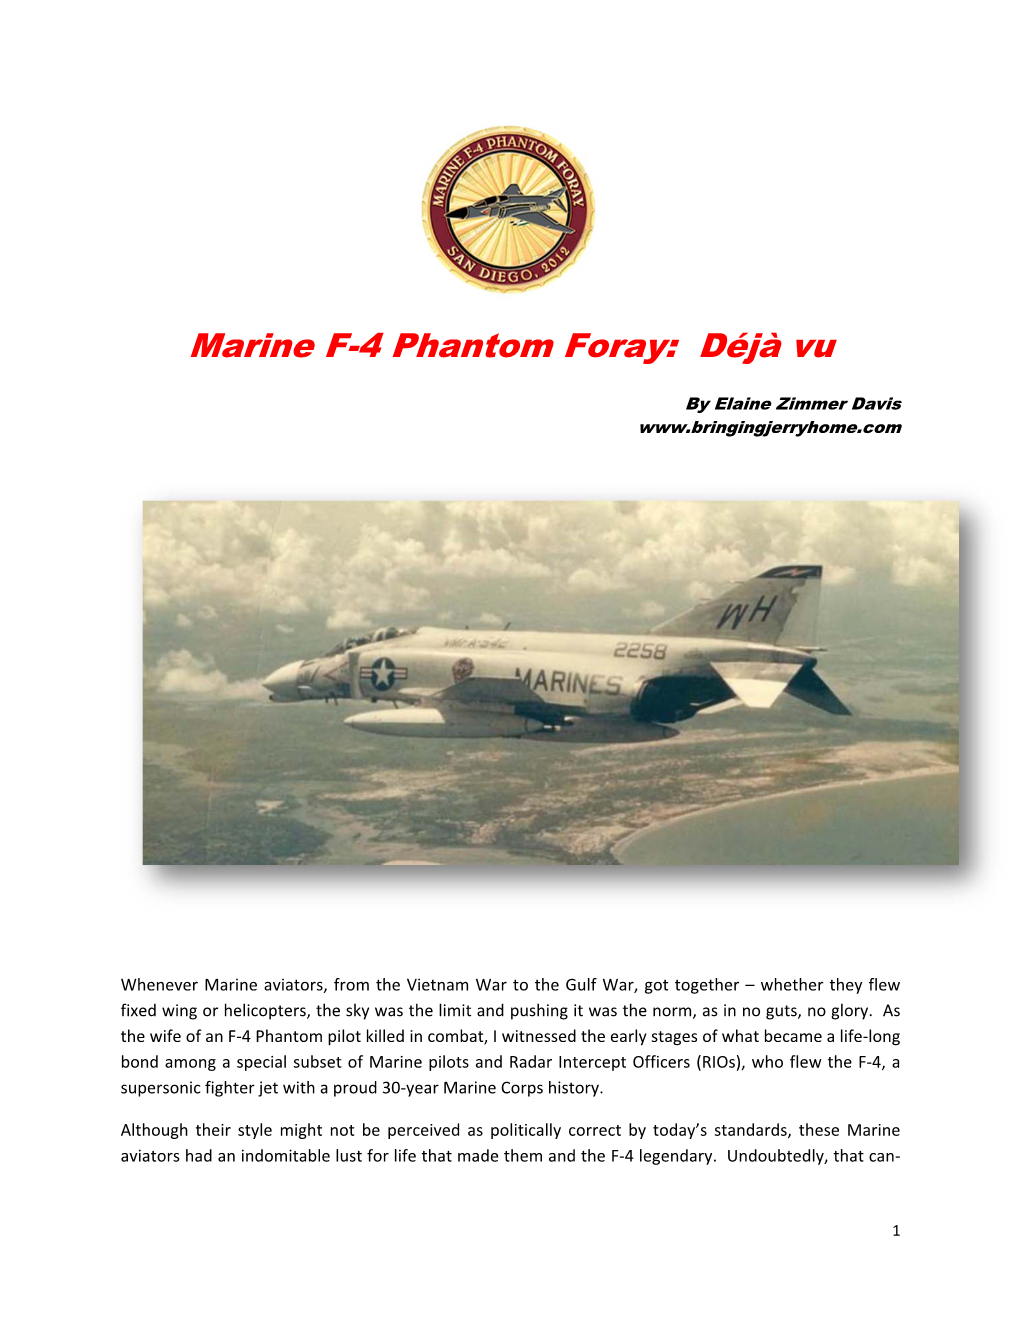 Marine F-4 Phantom Foray: Déjà Vu